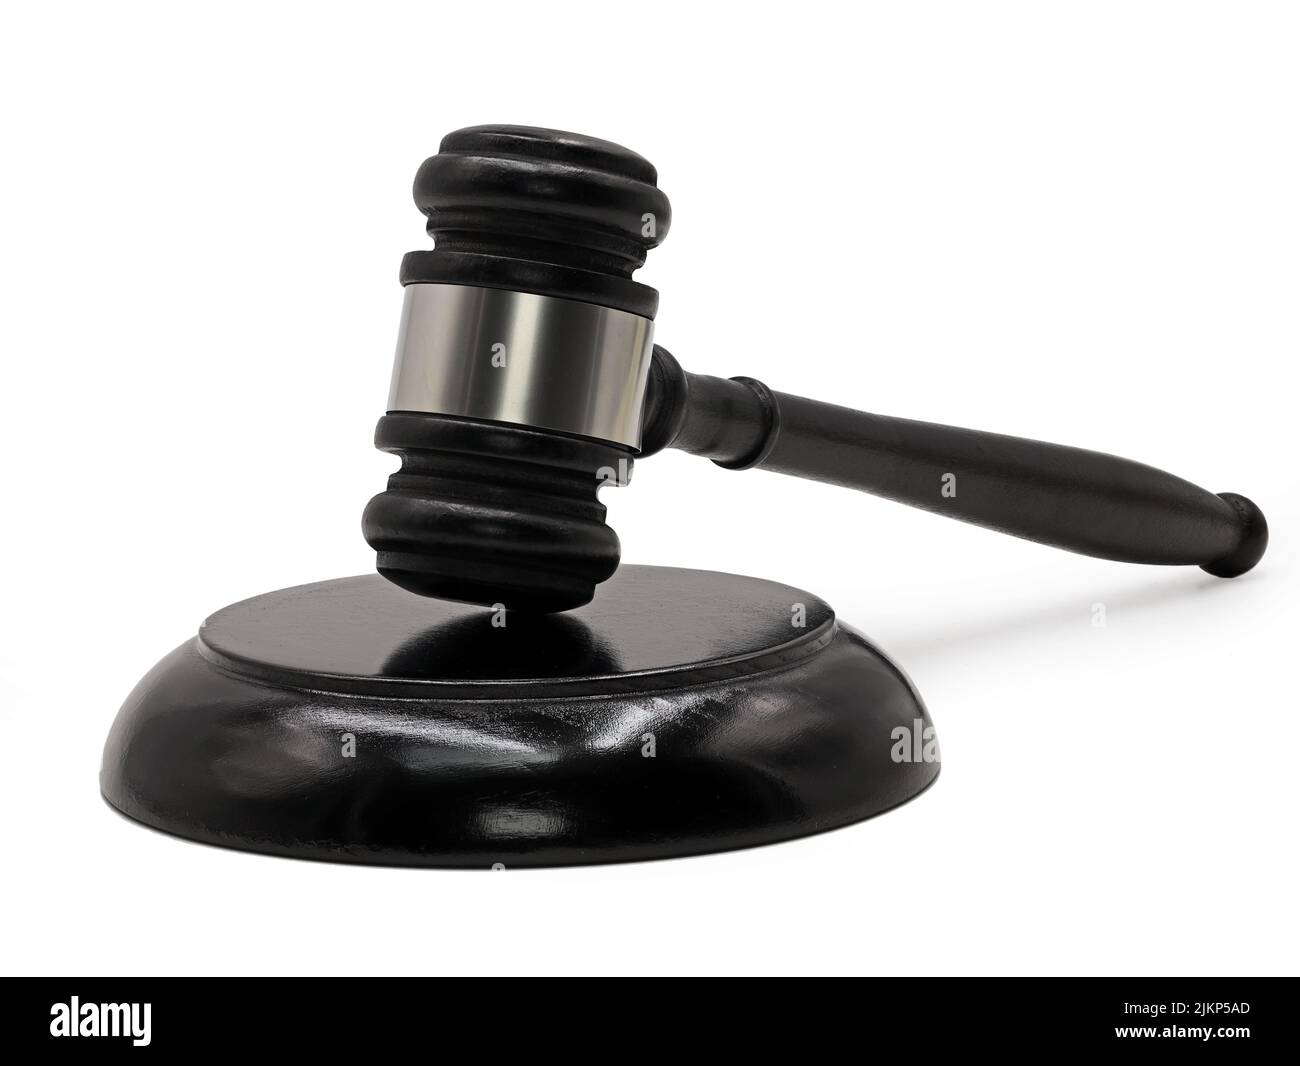 black judge gavel isolated on white background Stock Photo